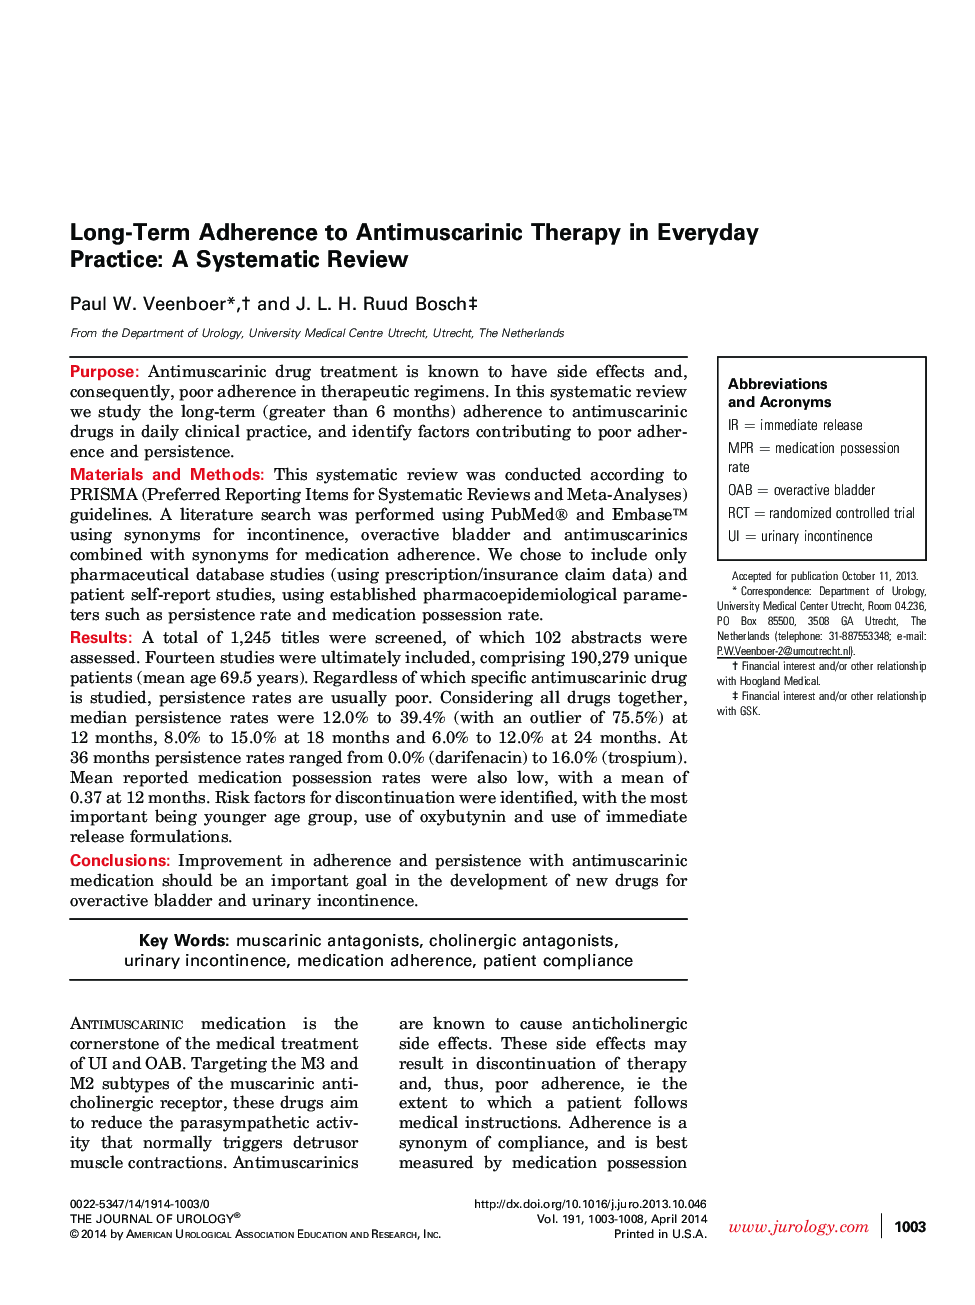 پیوستگی طولانی مدت به درمان آنتیوسارکینیک در تمرین روزمره: یک مرور منظم 